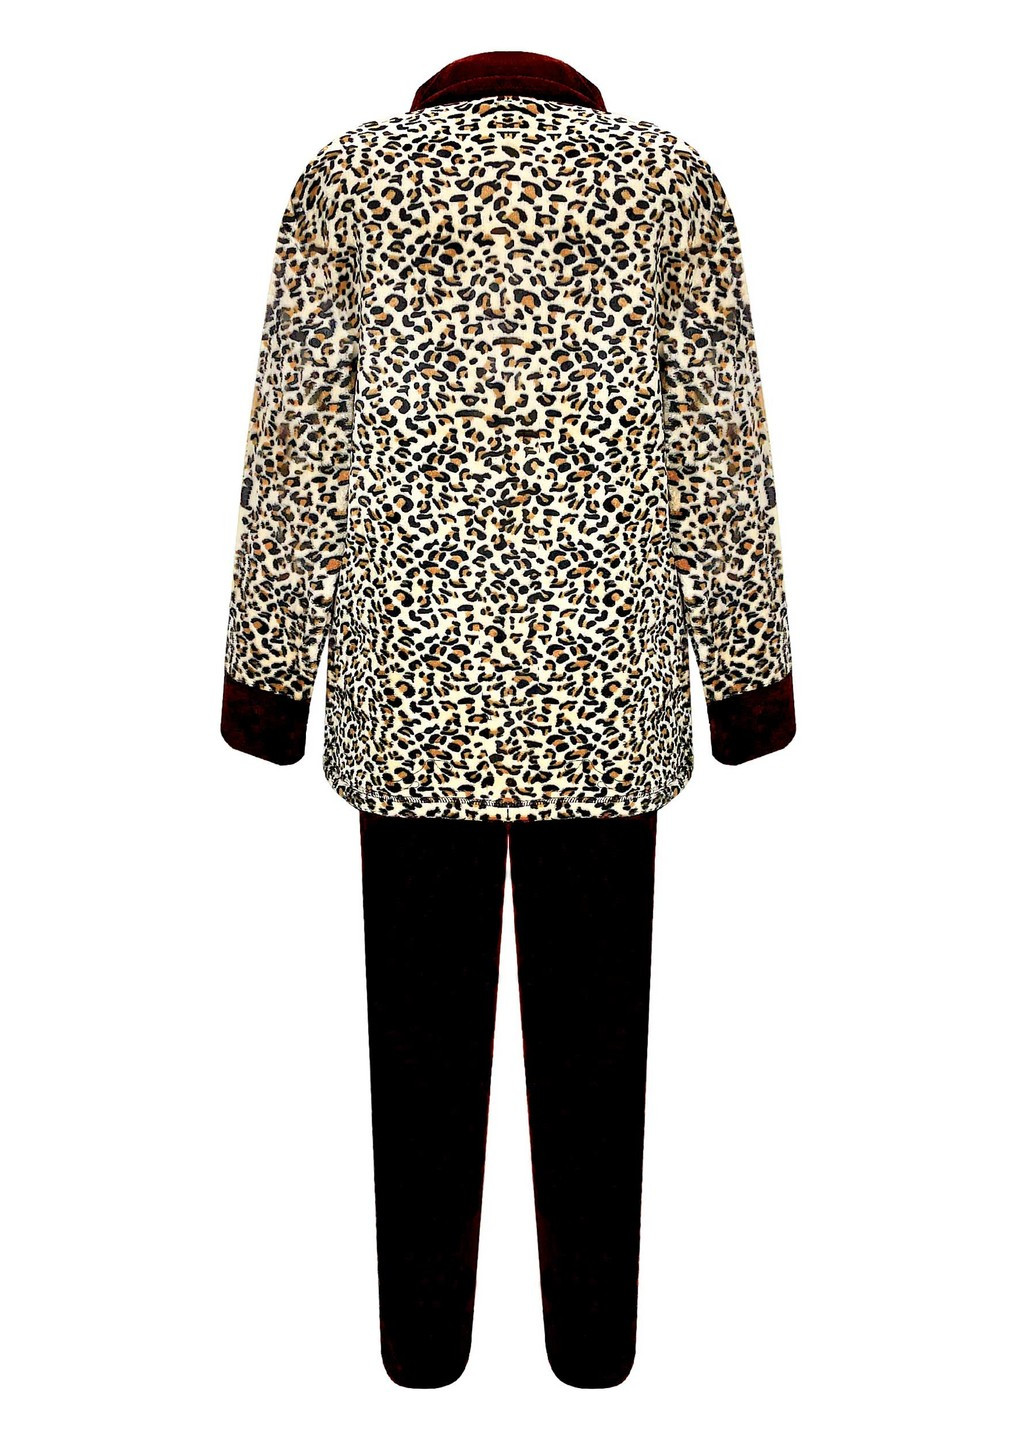 Белая всесезон комплект махровый на молнии леопард кофта + брюки Жемчужина стилей 1103